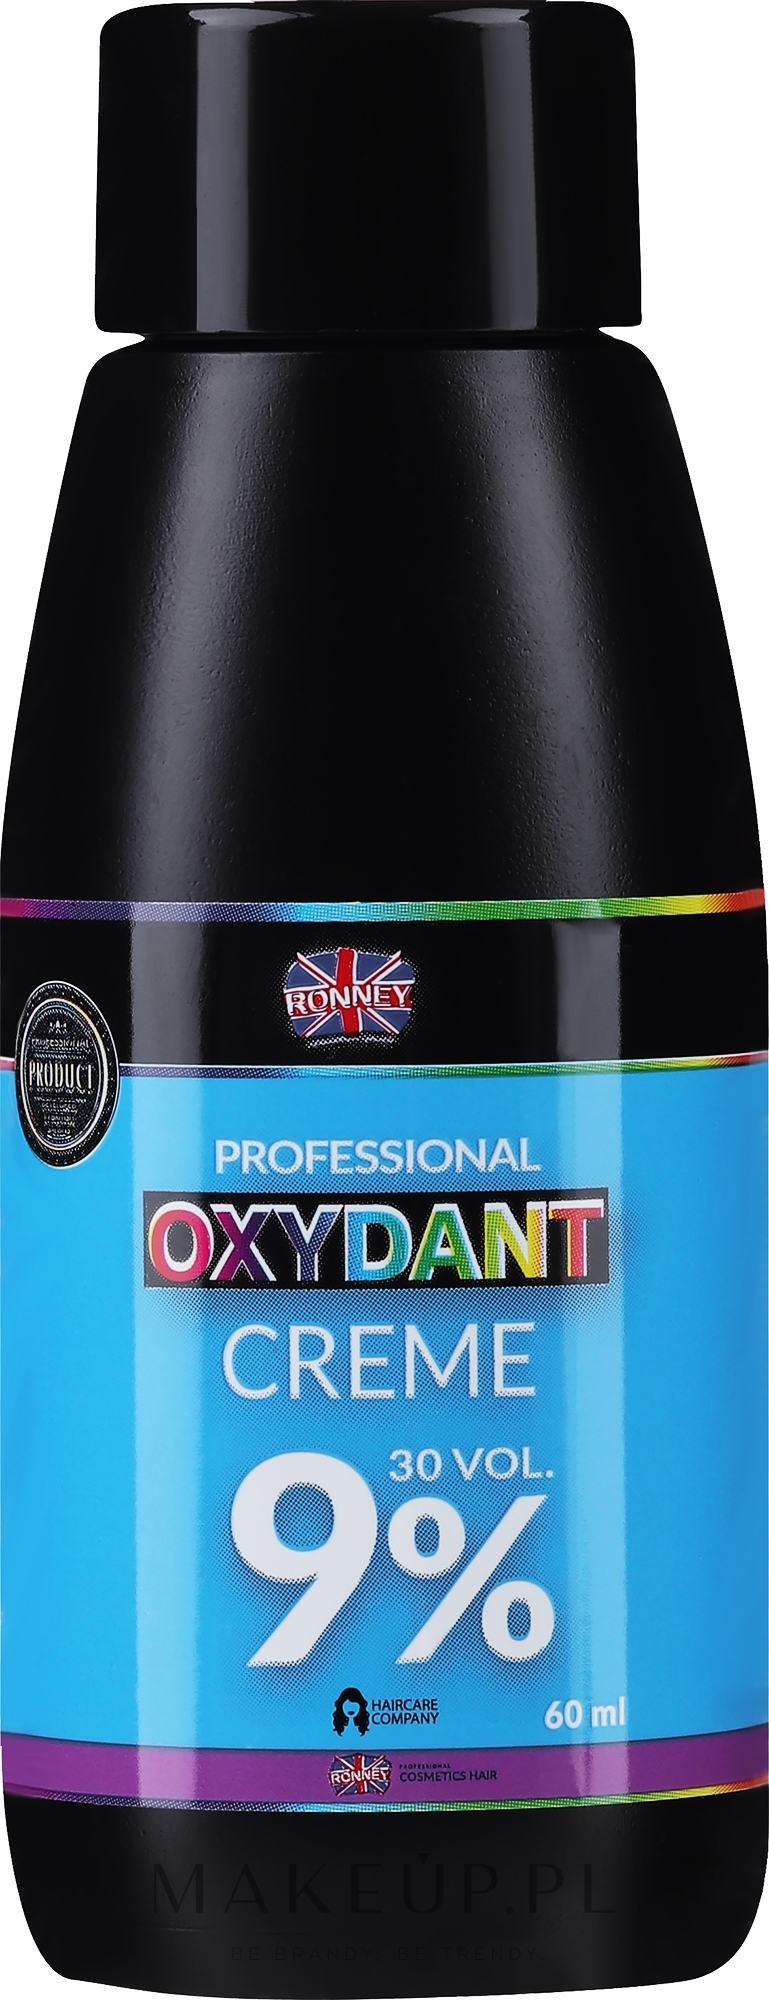 Emulsja utleniająca w kremie do rozjaśniania i farbowania włosów 9% - Ronney Professional Oxidant Creme  — Zdjęcie 60 ml